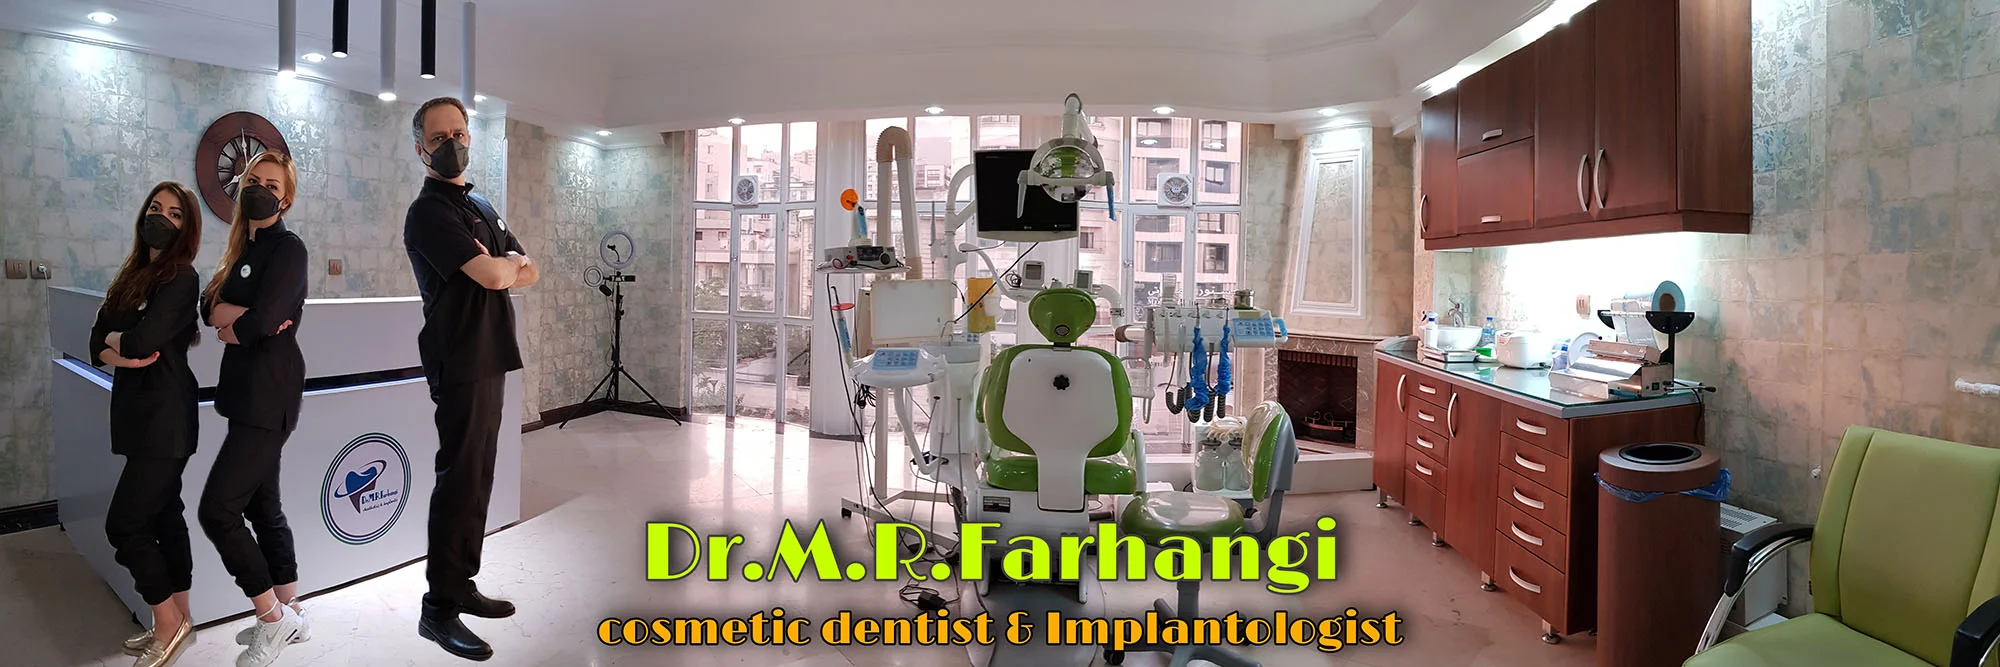 دکتر فرهنگی-دندانپزشک متخصص ایمپلنت